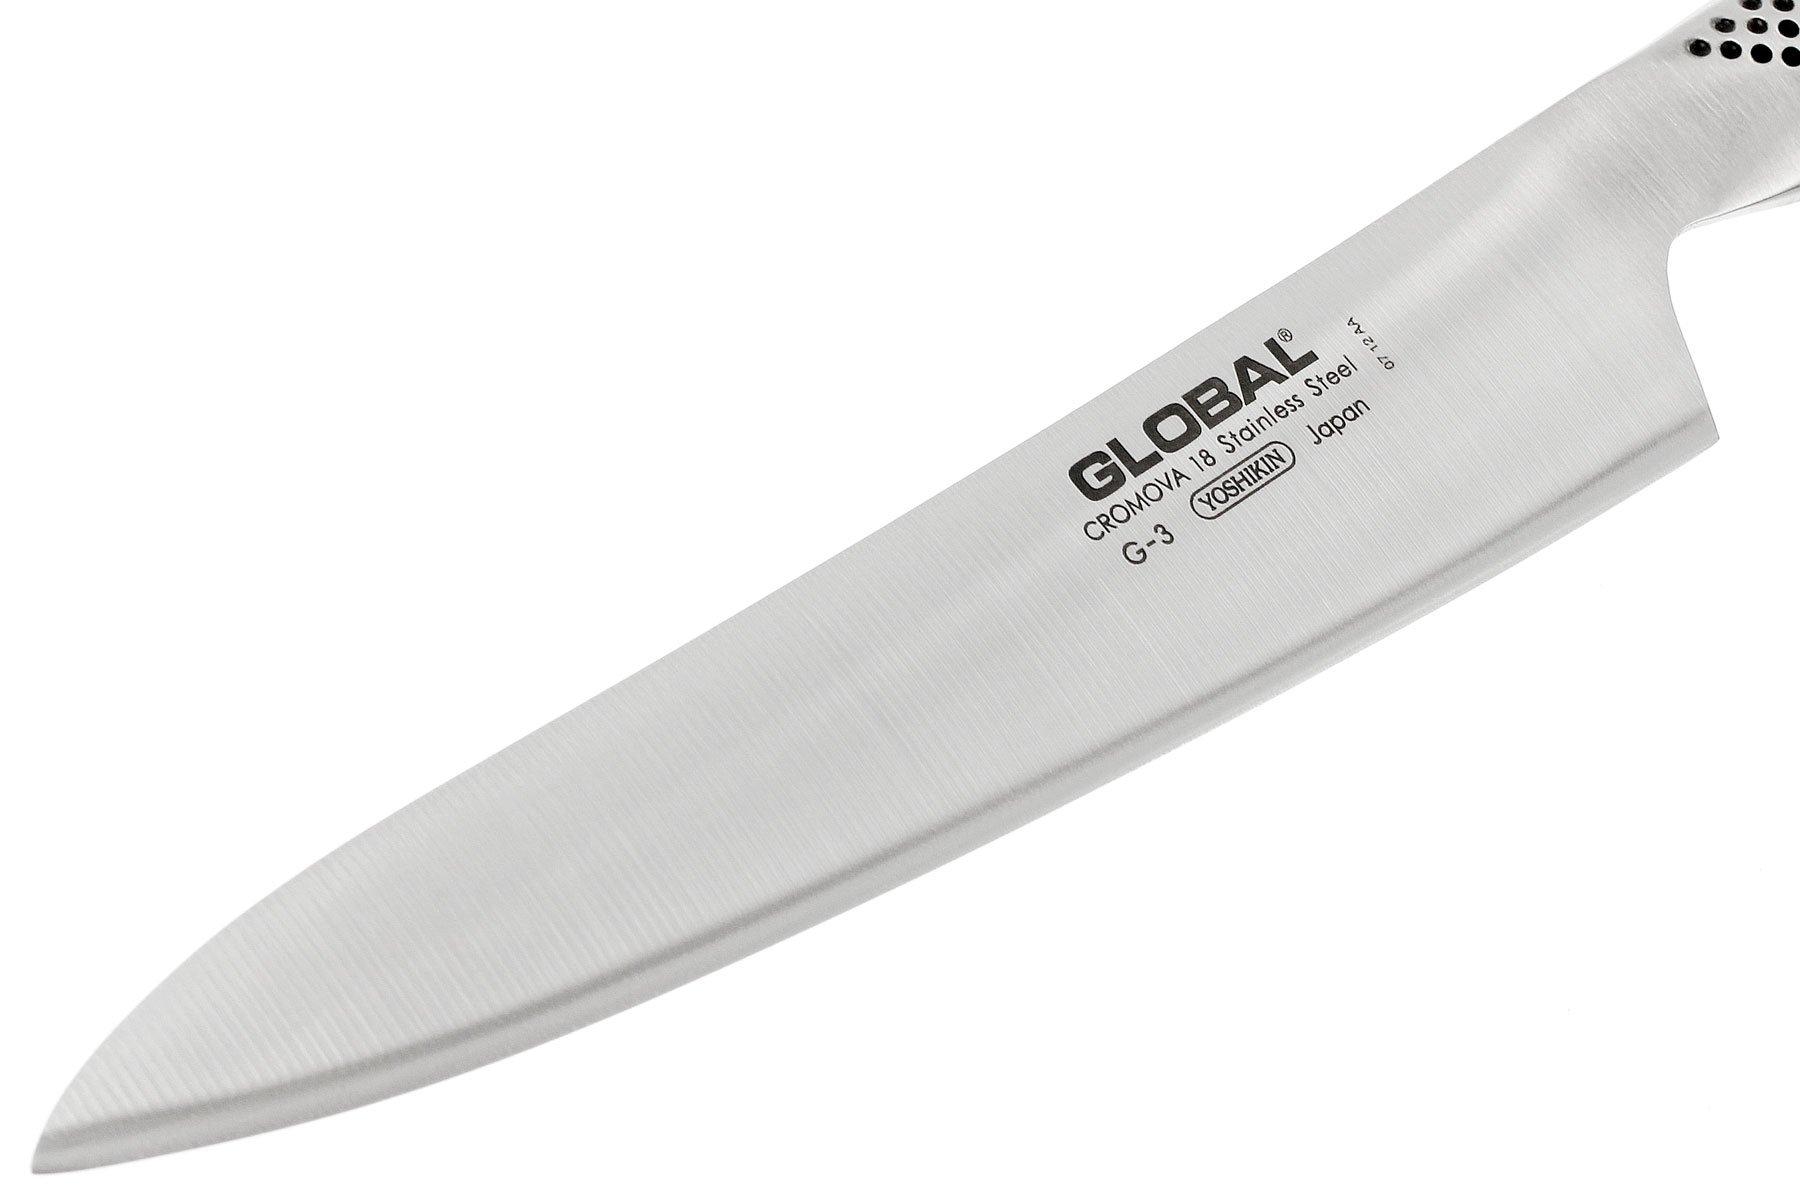 Couteau GLOBAL à viande G3, lame 21 cm